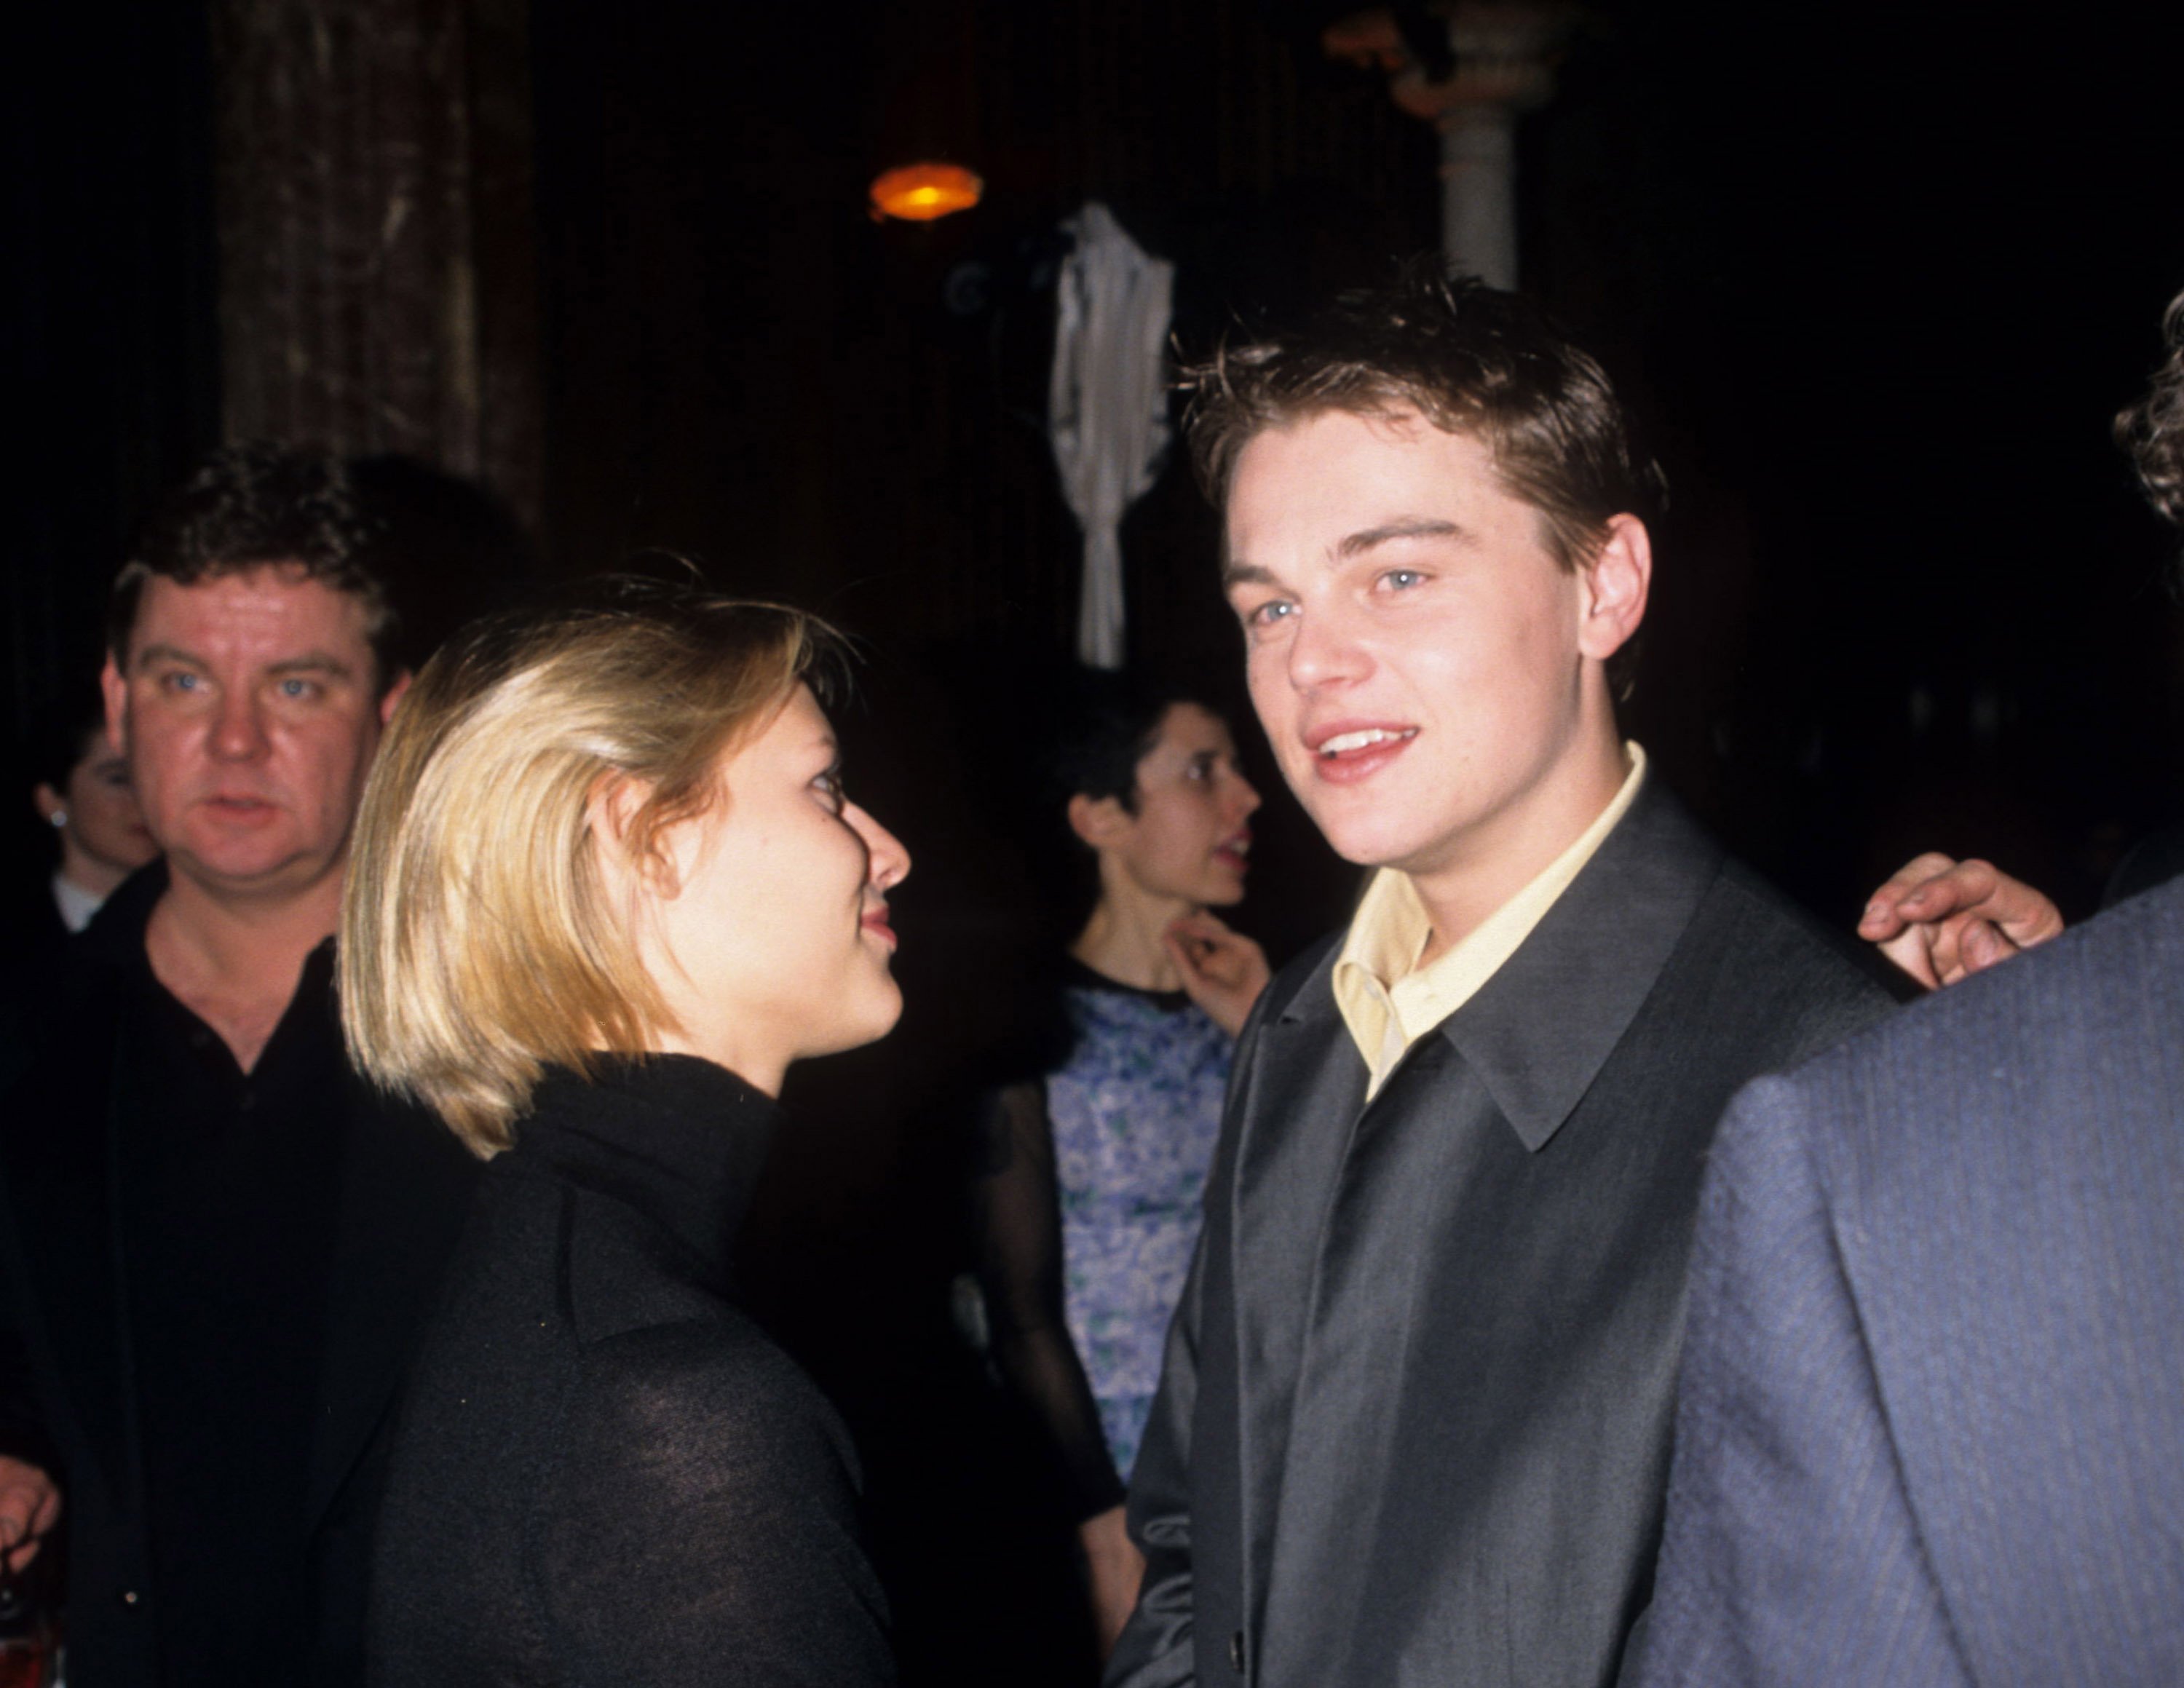 Claire Danes and Leonardo DiCaprio